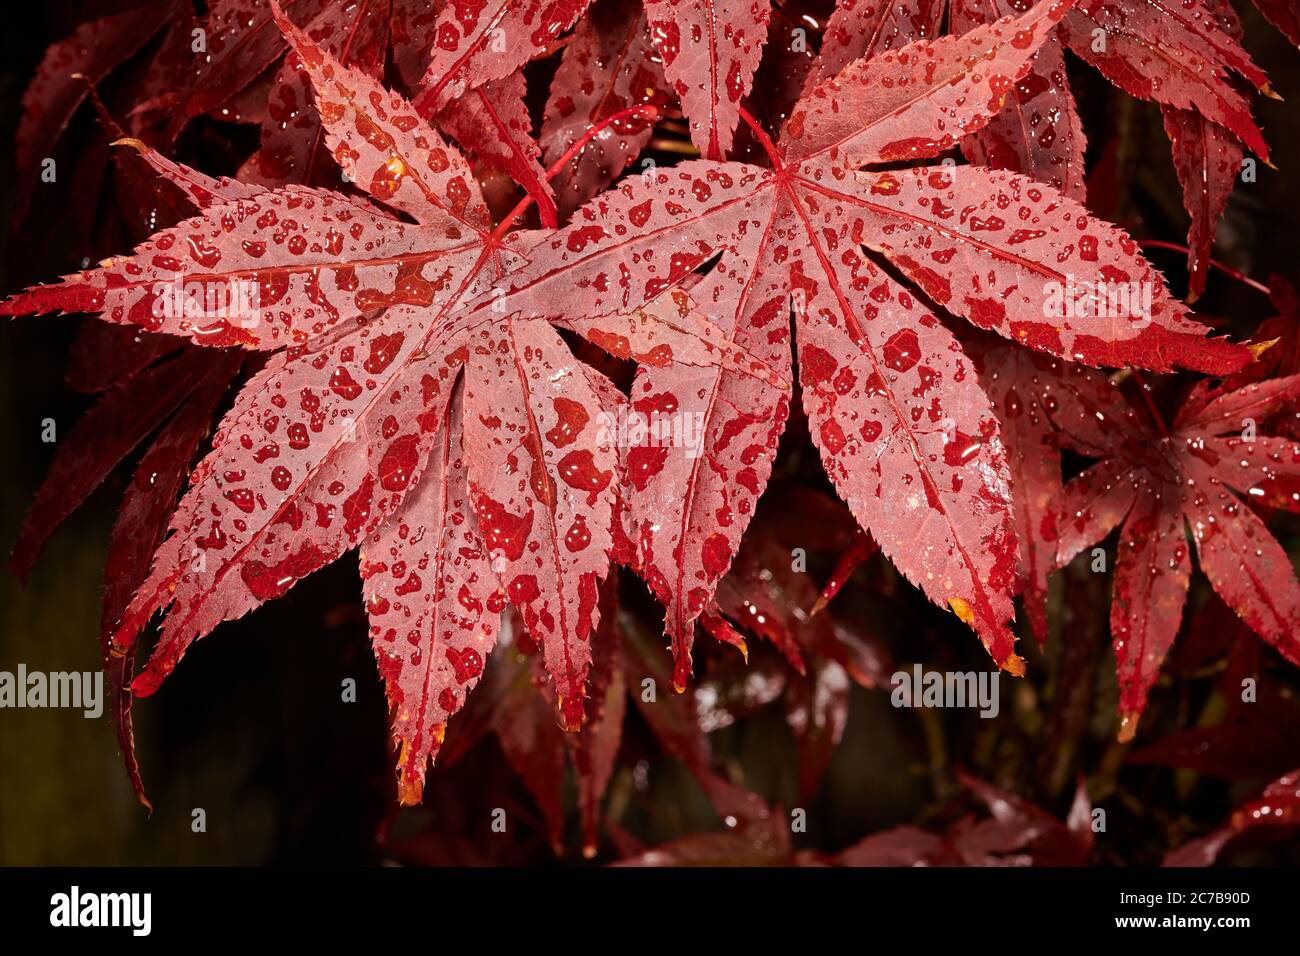 Regen durchnässt dunkelrote Blätter eines acer palmatum (japanischer Ahorn) Strauch. Stockfoto